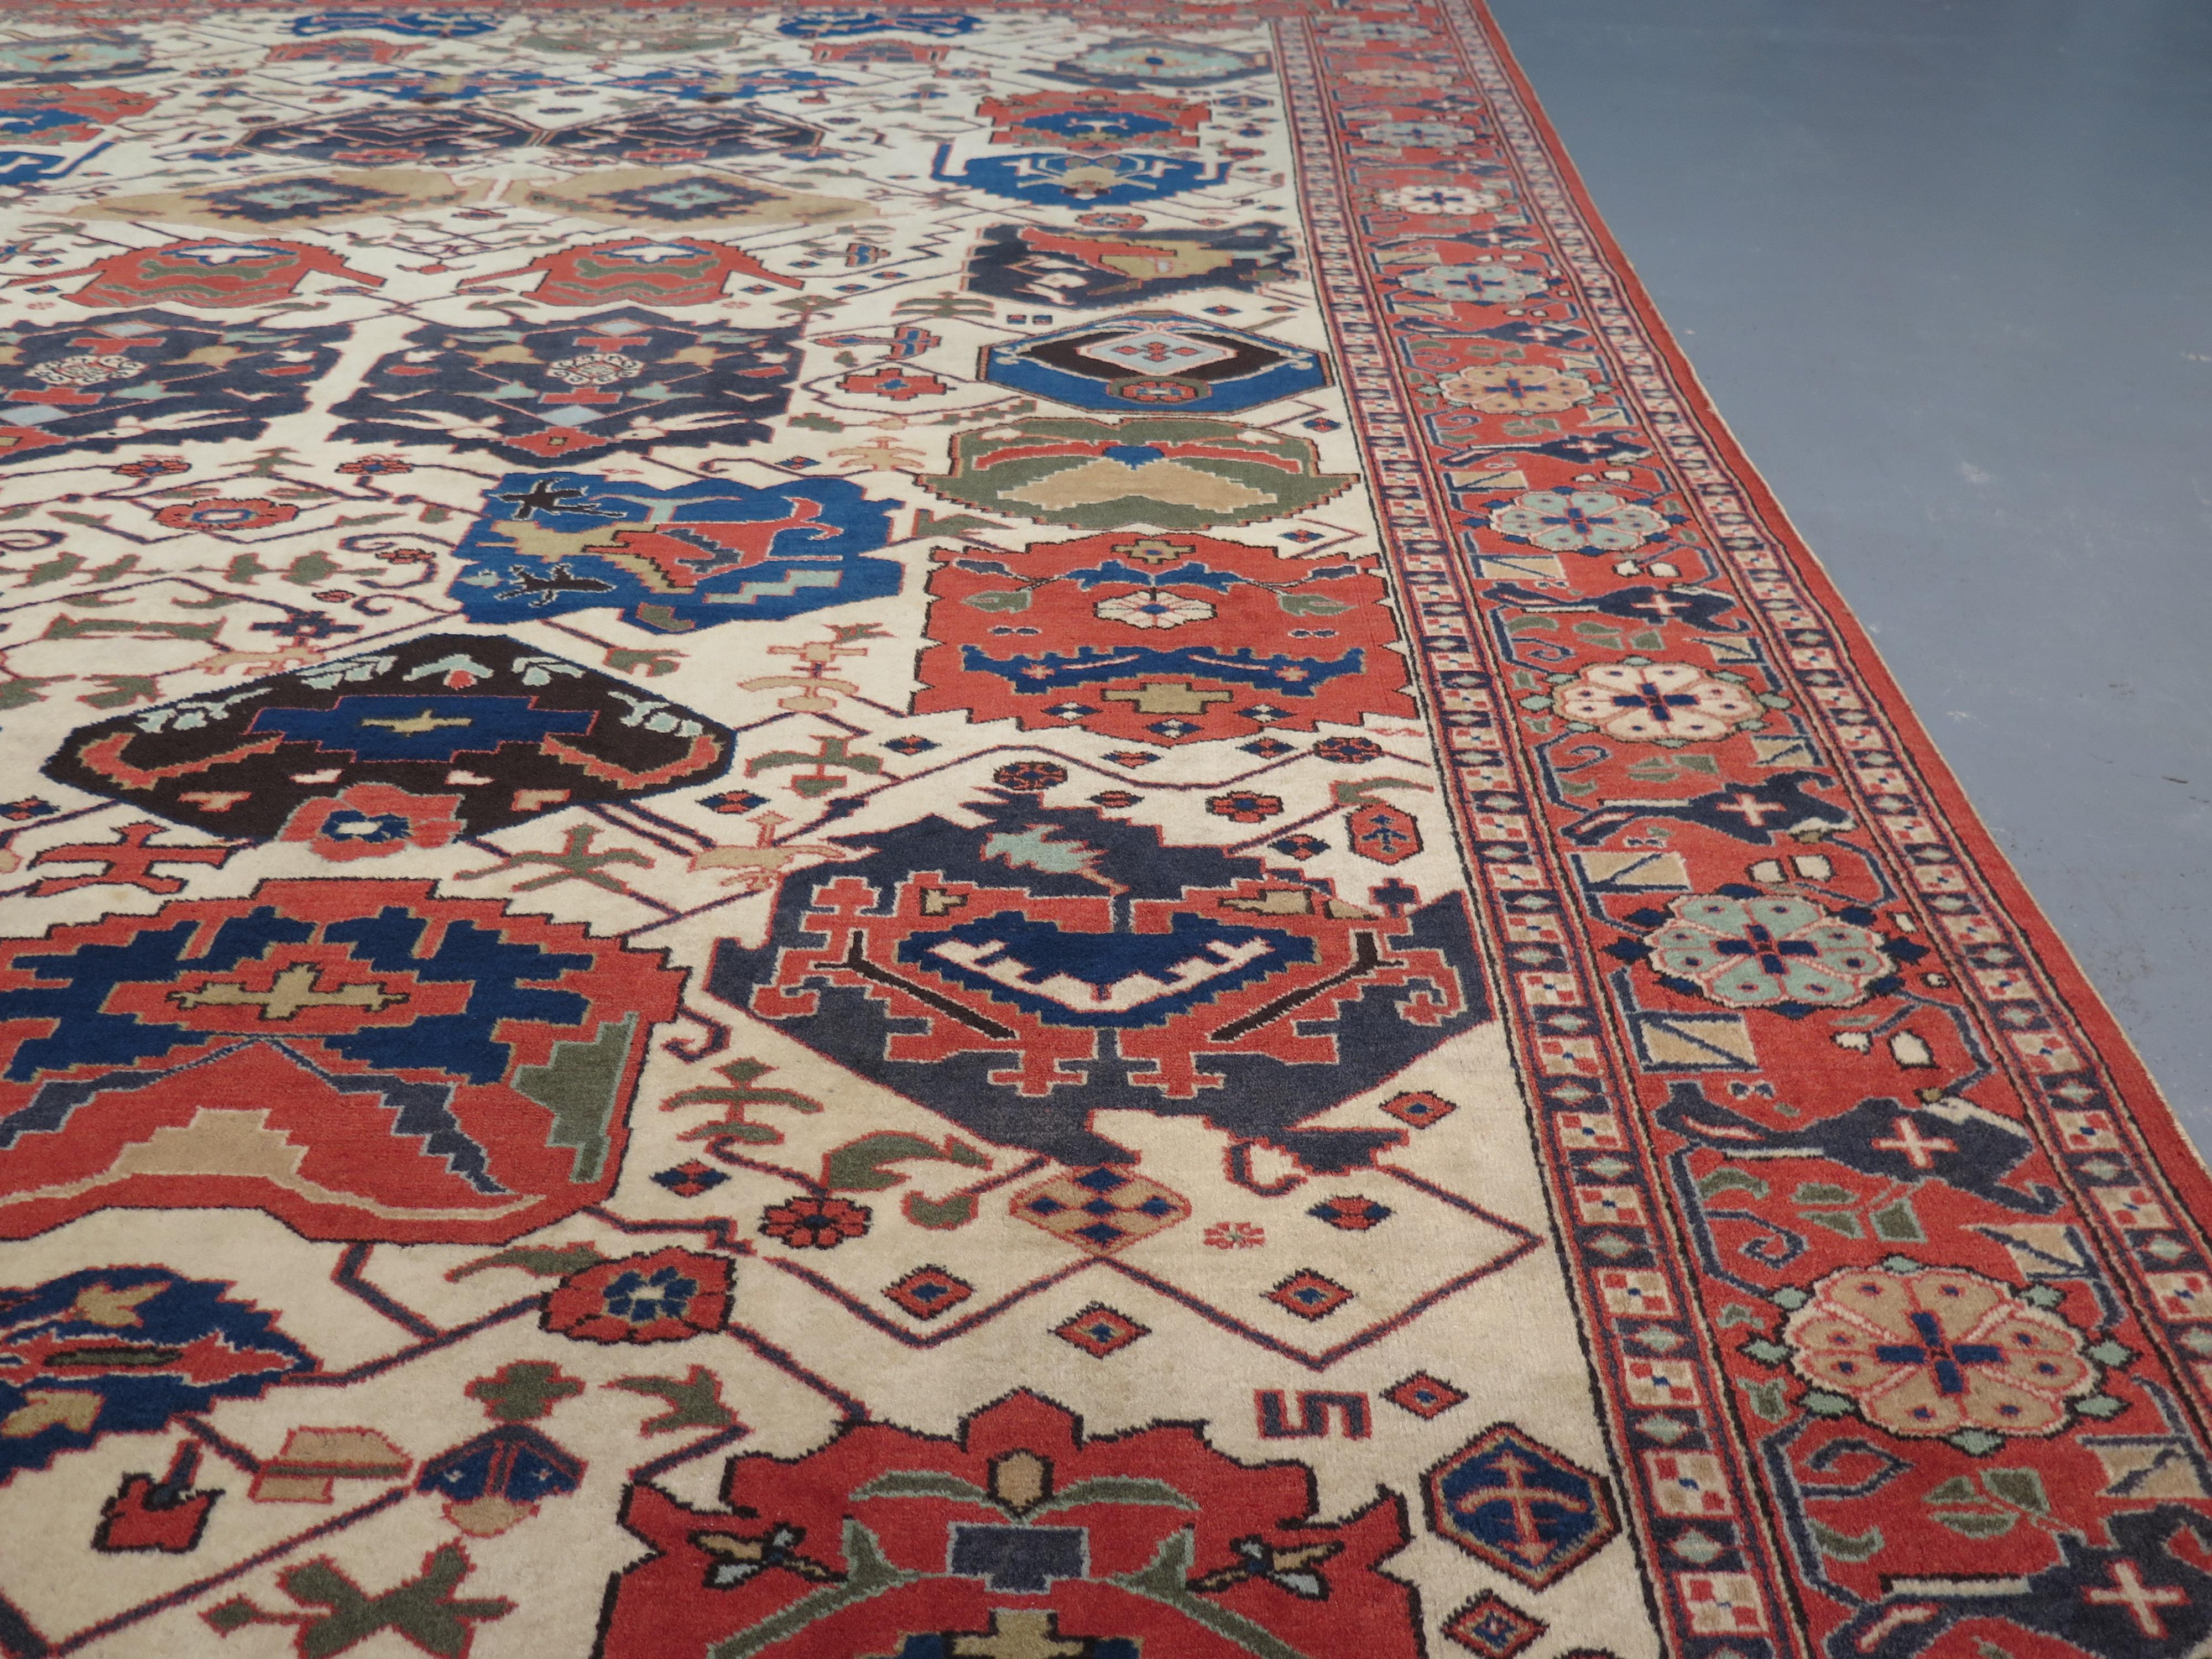 Aserbaidschan hat eine reiche Geschichte der Teppichweberei, die mehrere Jahrhunderte zurückreicht. Aufgrund seiner geografischen Lage befindet es sich am Schnittpunkt verschiedener Kulturen, was sich in den Teppichen in ihrer Vielfalt und Schönheit